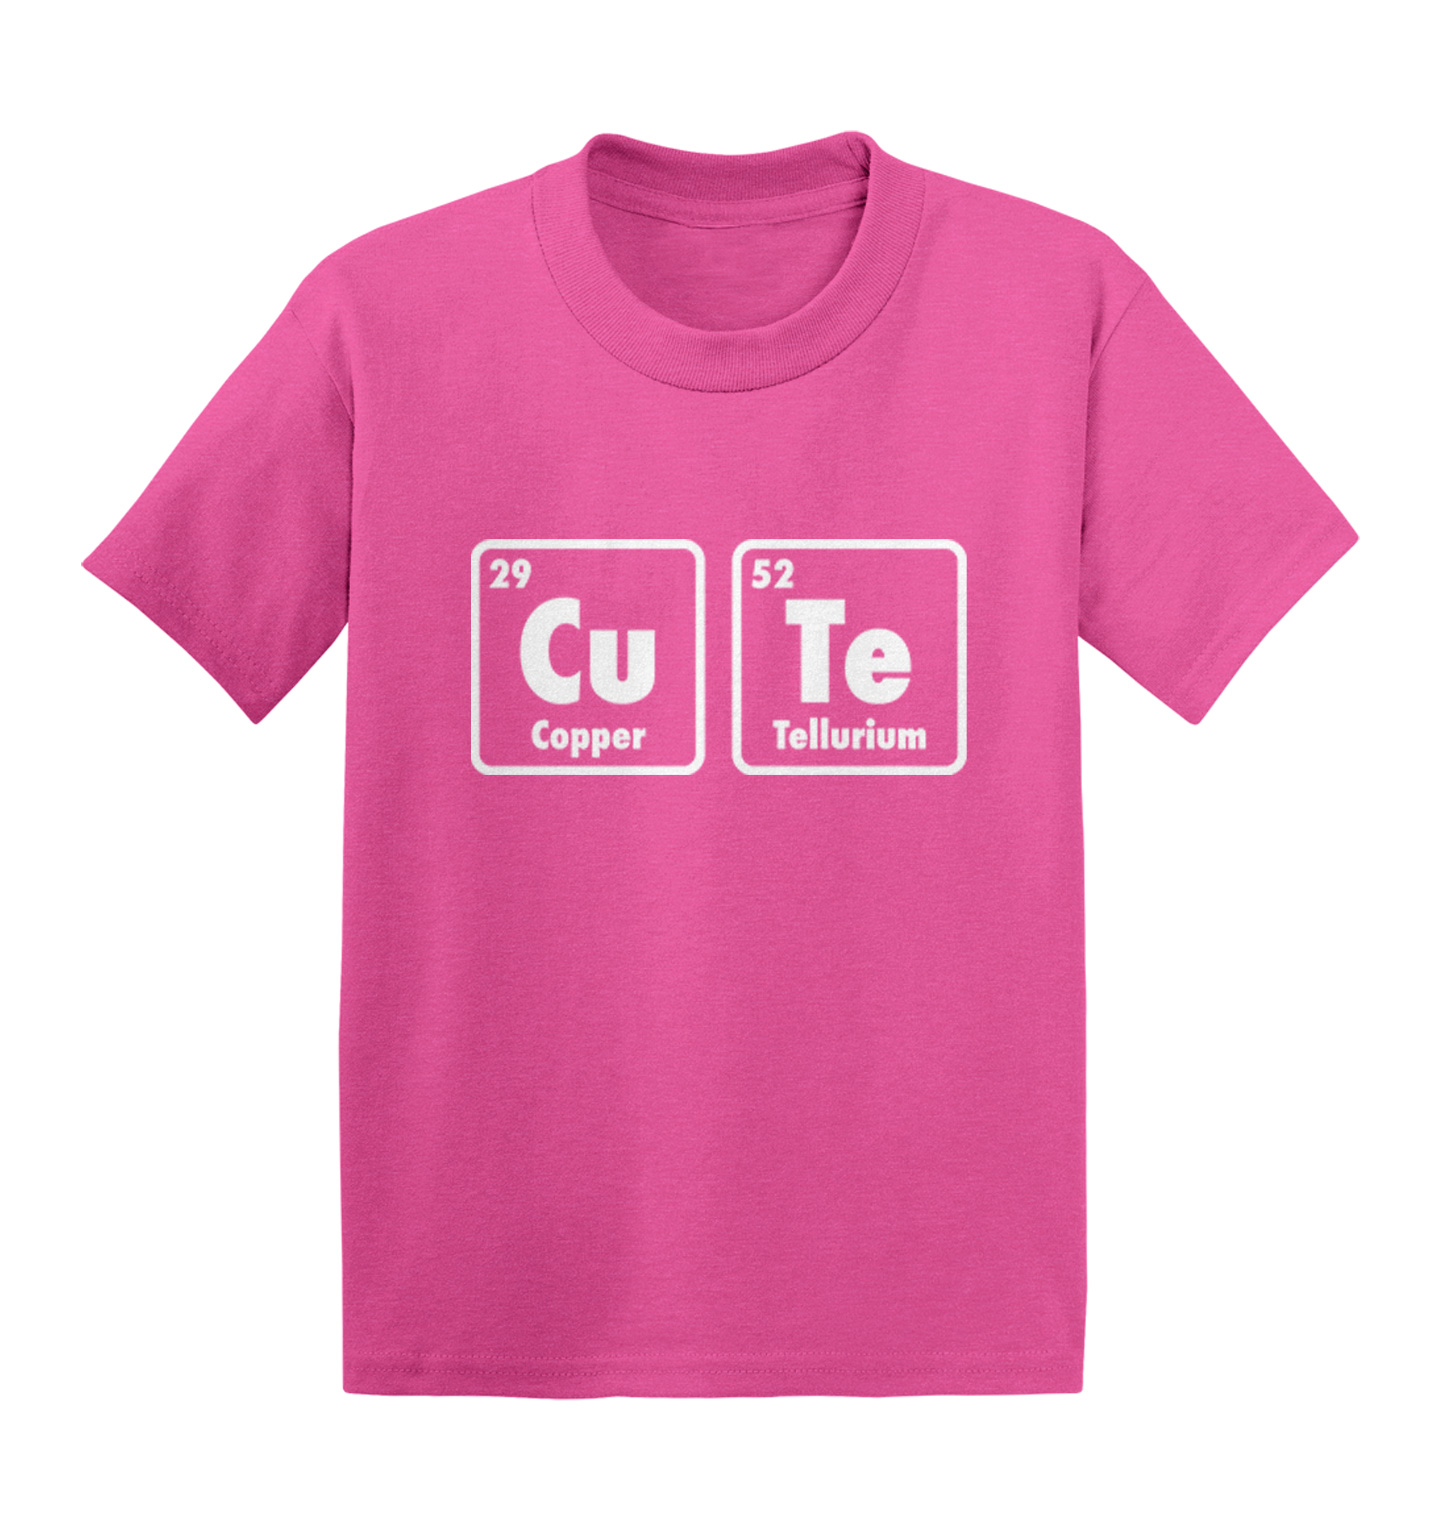 Cute -Scientific Elements Adorable Kids T-shirt | eBay